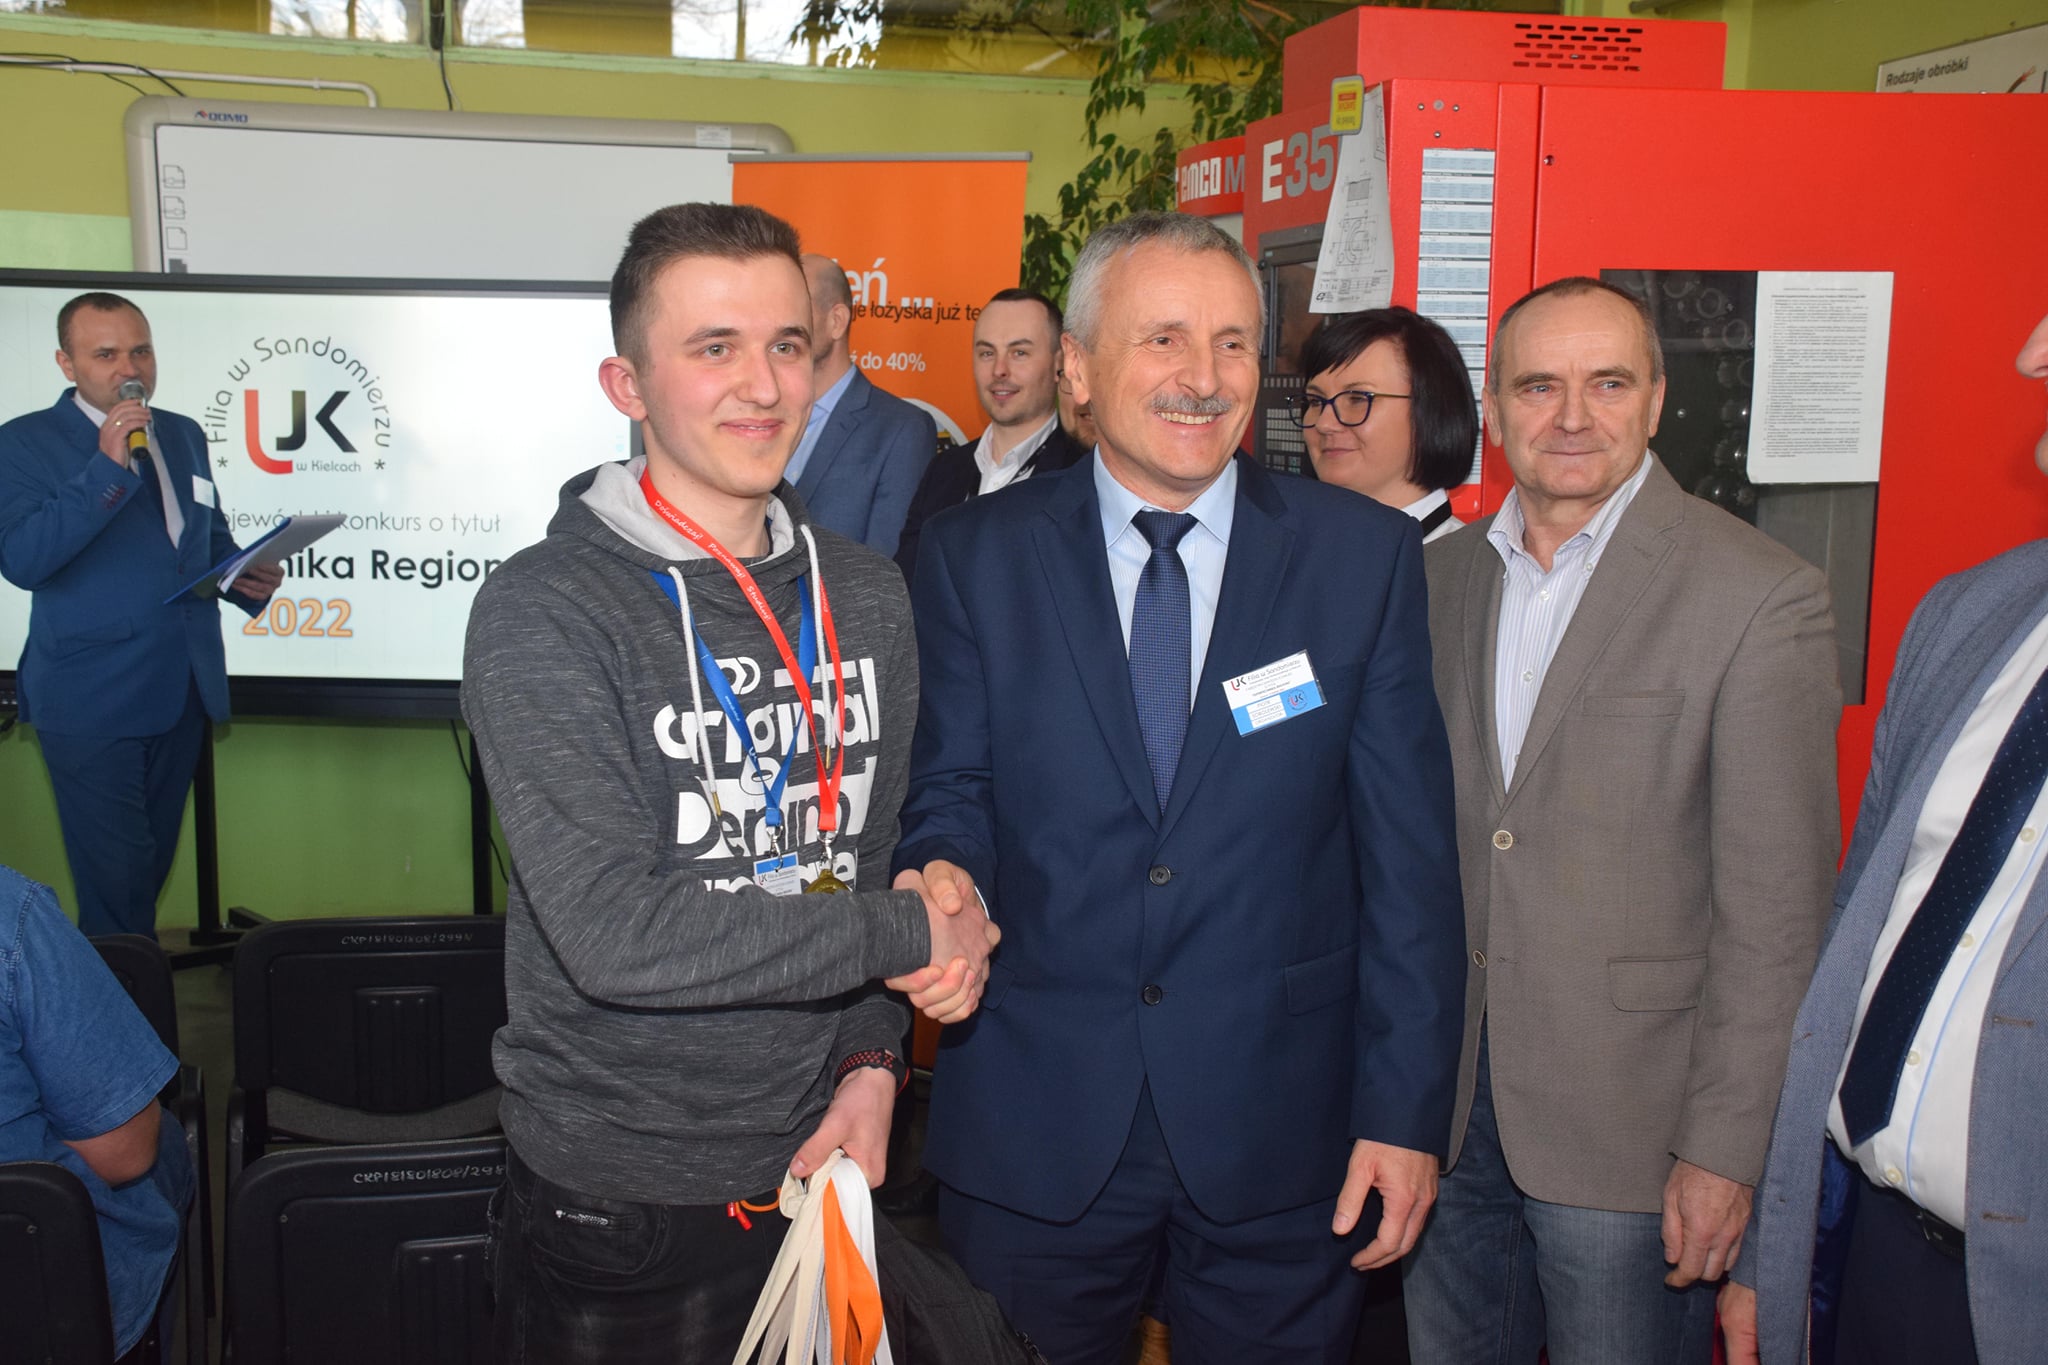 Dziekan Piotr sobolewski wraz z zwycięzcą konkursu o tytuł supertechnika regionu